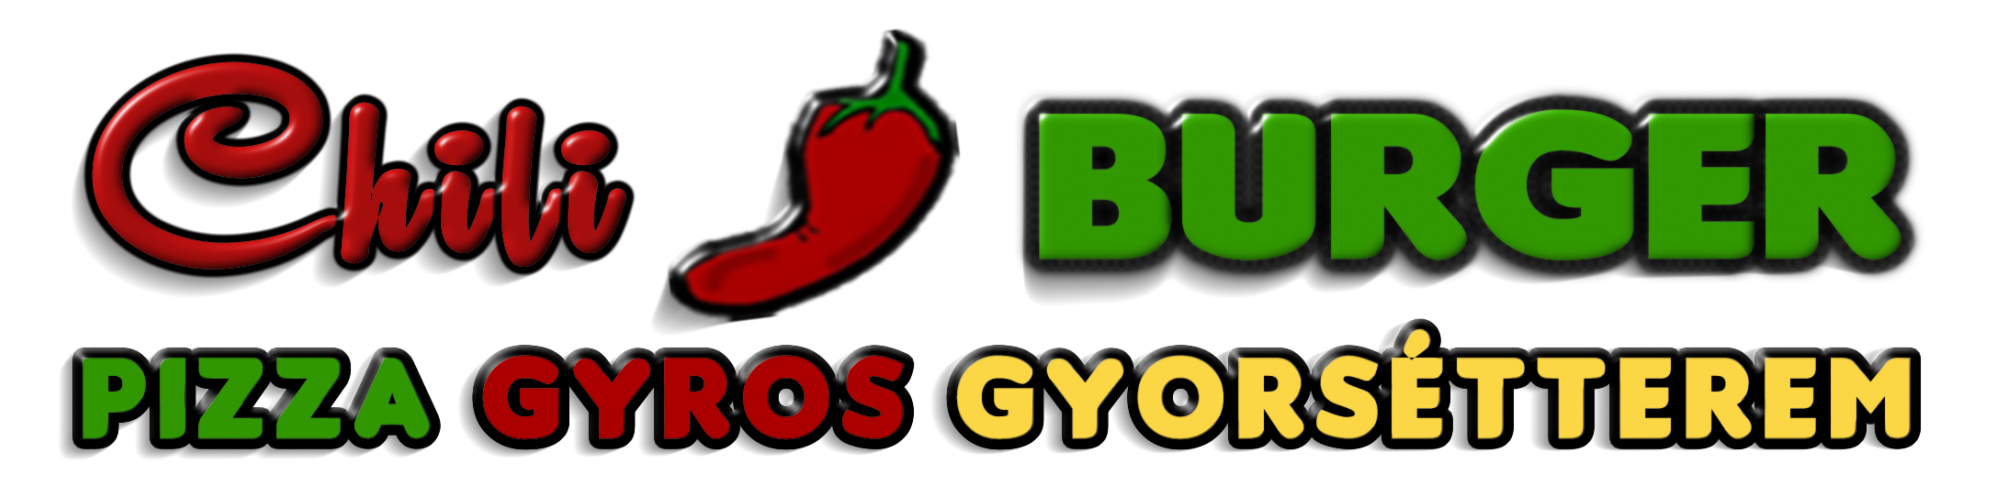 ChiliBurger Pizza & Gyros Gyorsétterem